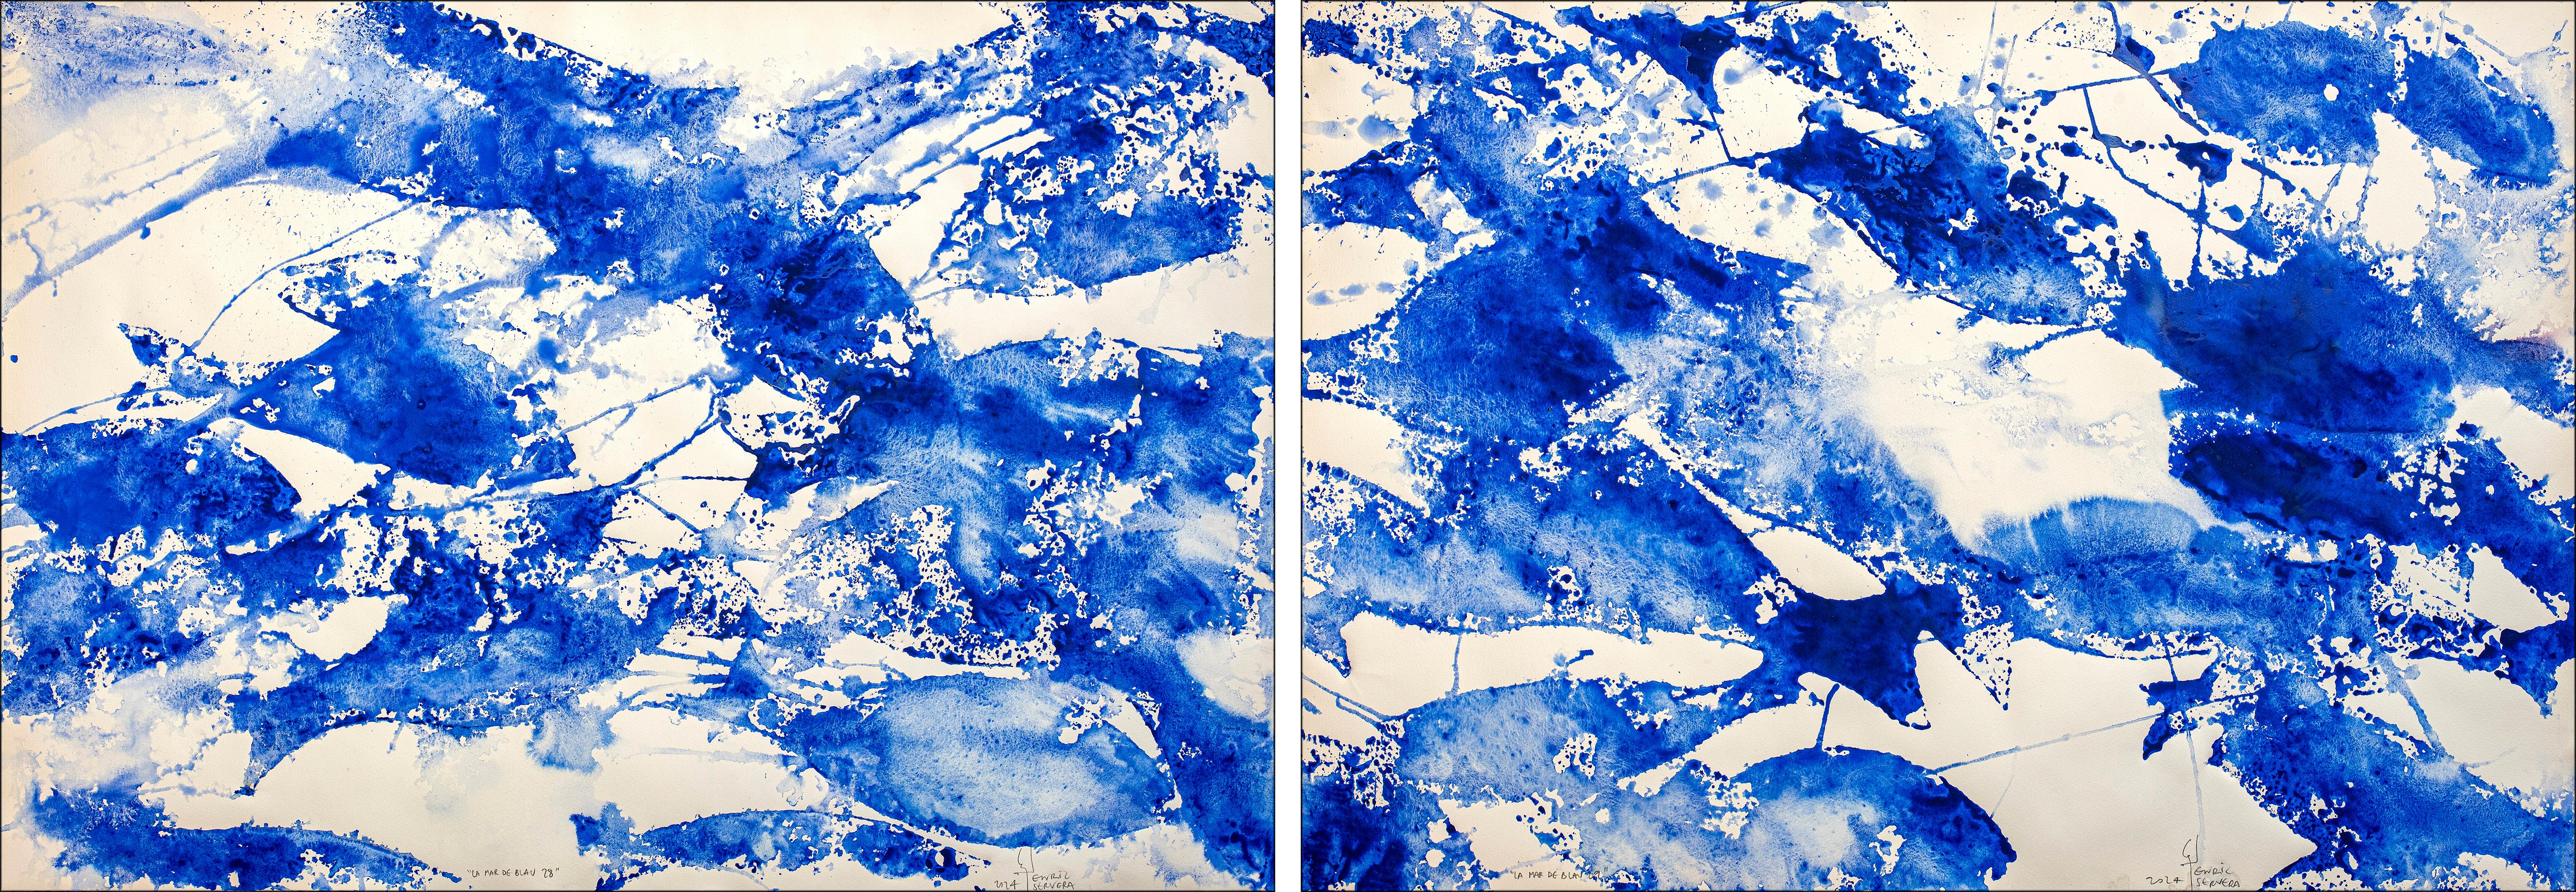 Enric Servera Animal Painting – Abstraktes Diptychon Meer des Blauen Diptychons, abstrakte blau-weiße Fischmuster, mediterraner Stil 